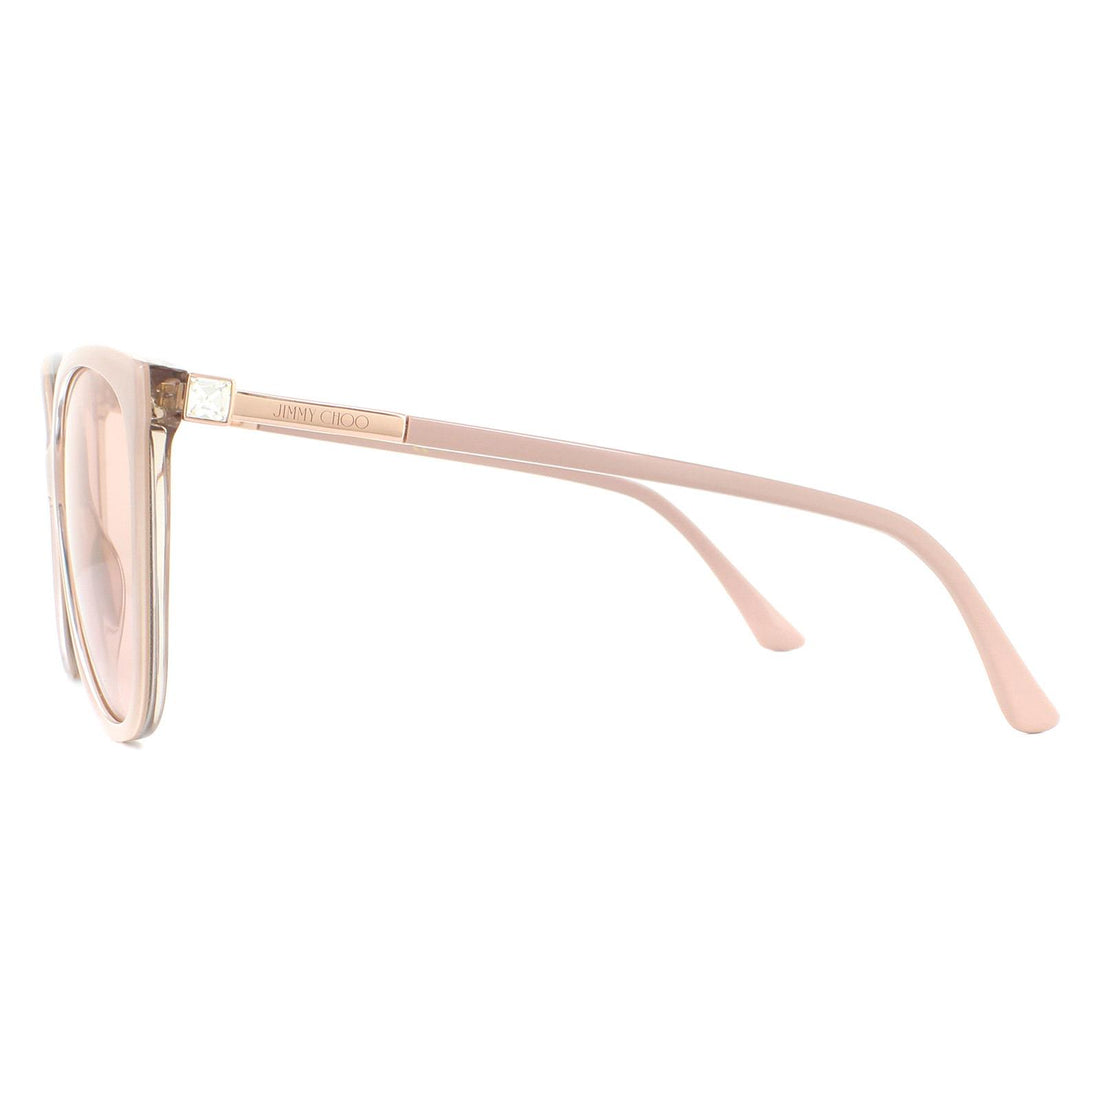 Jimmy Choo Sunglasses Lissa/S KON K1 Nude Glitter Gold Mirror